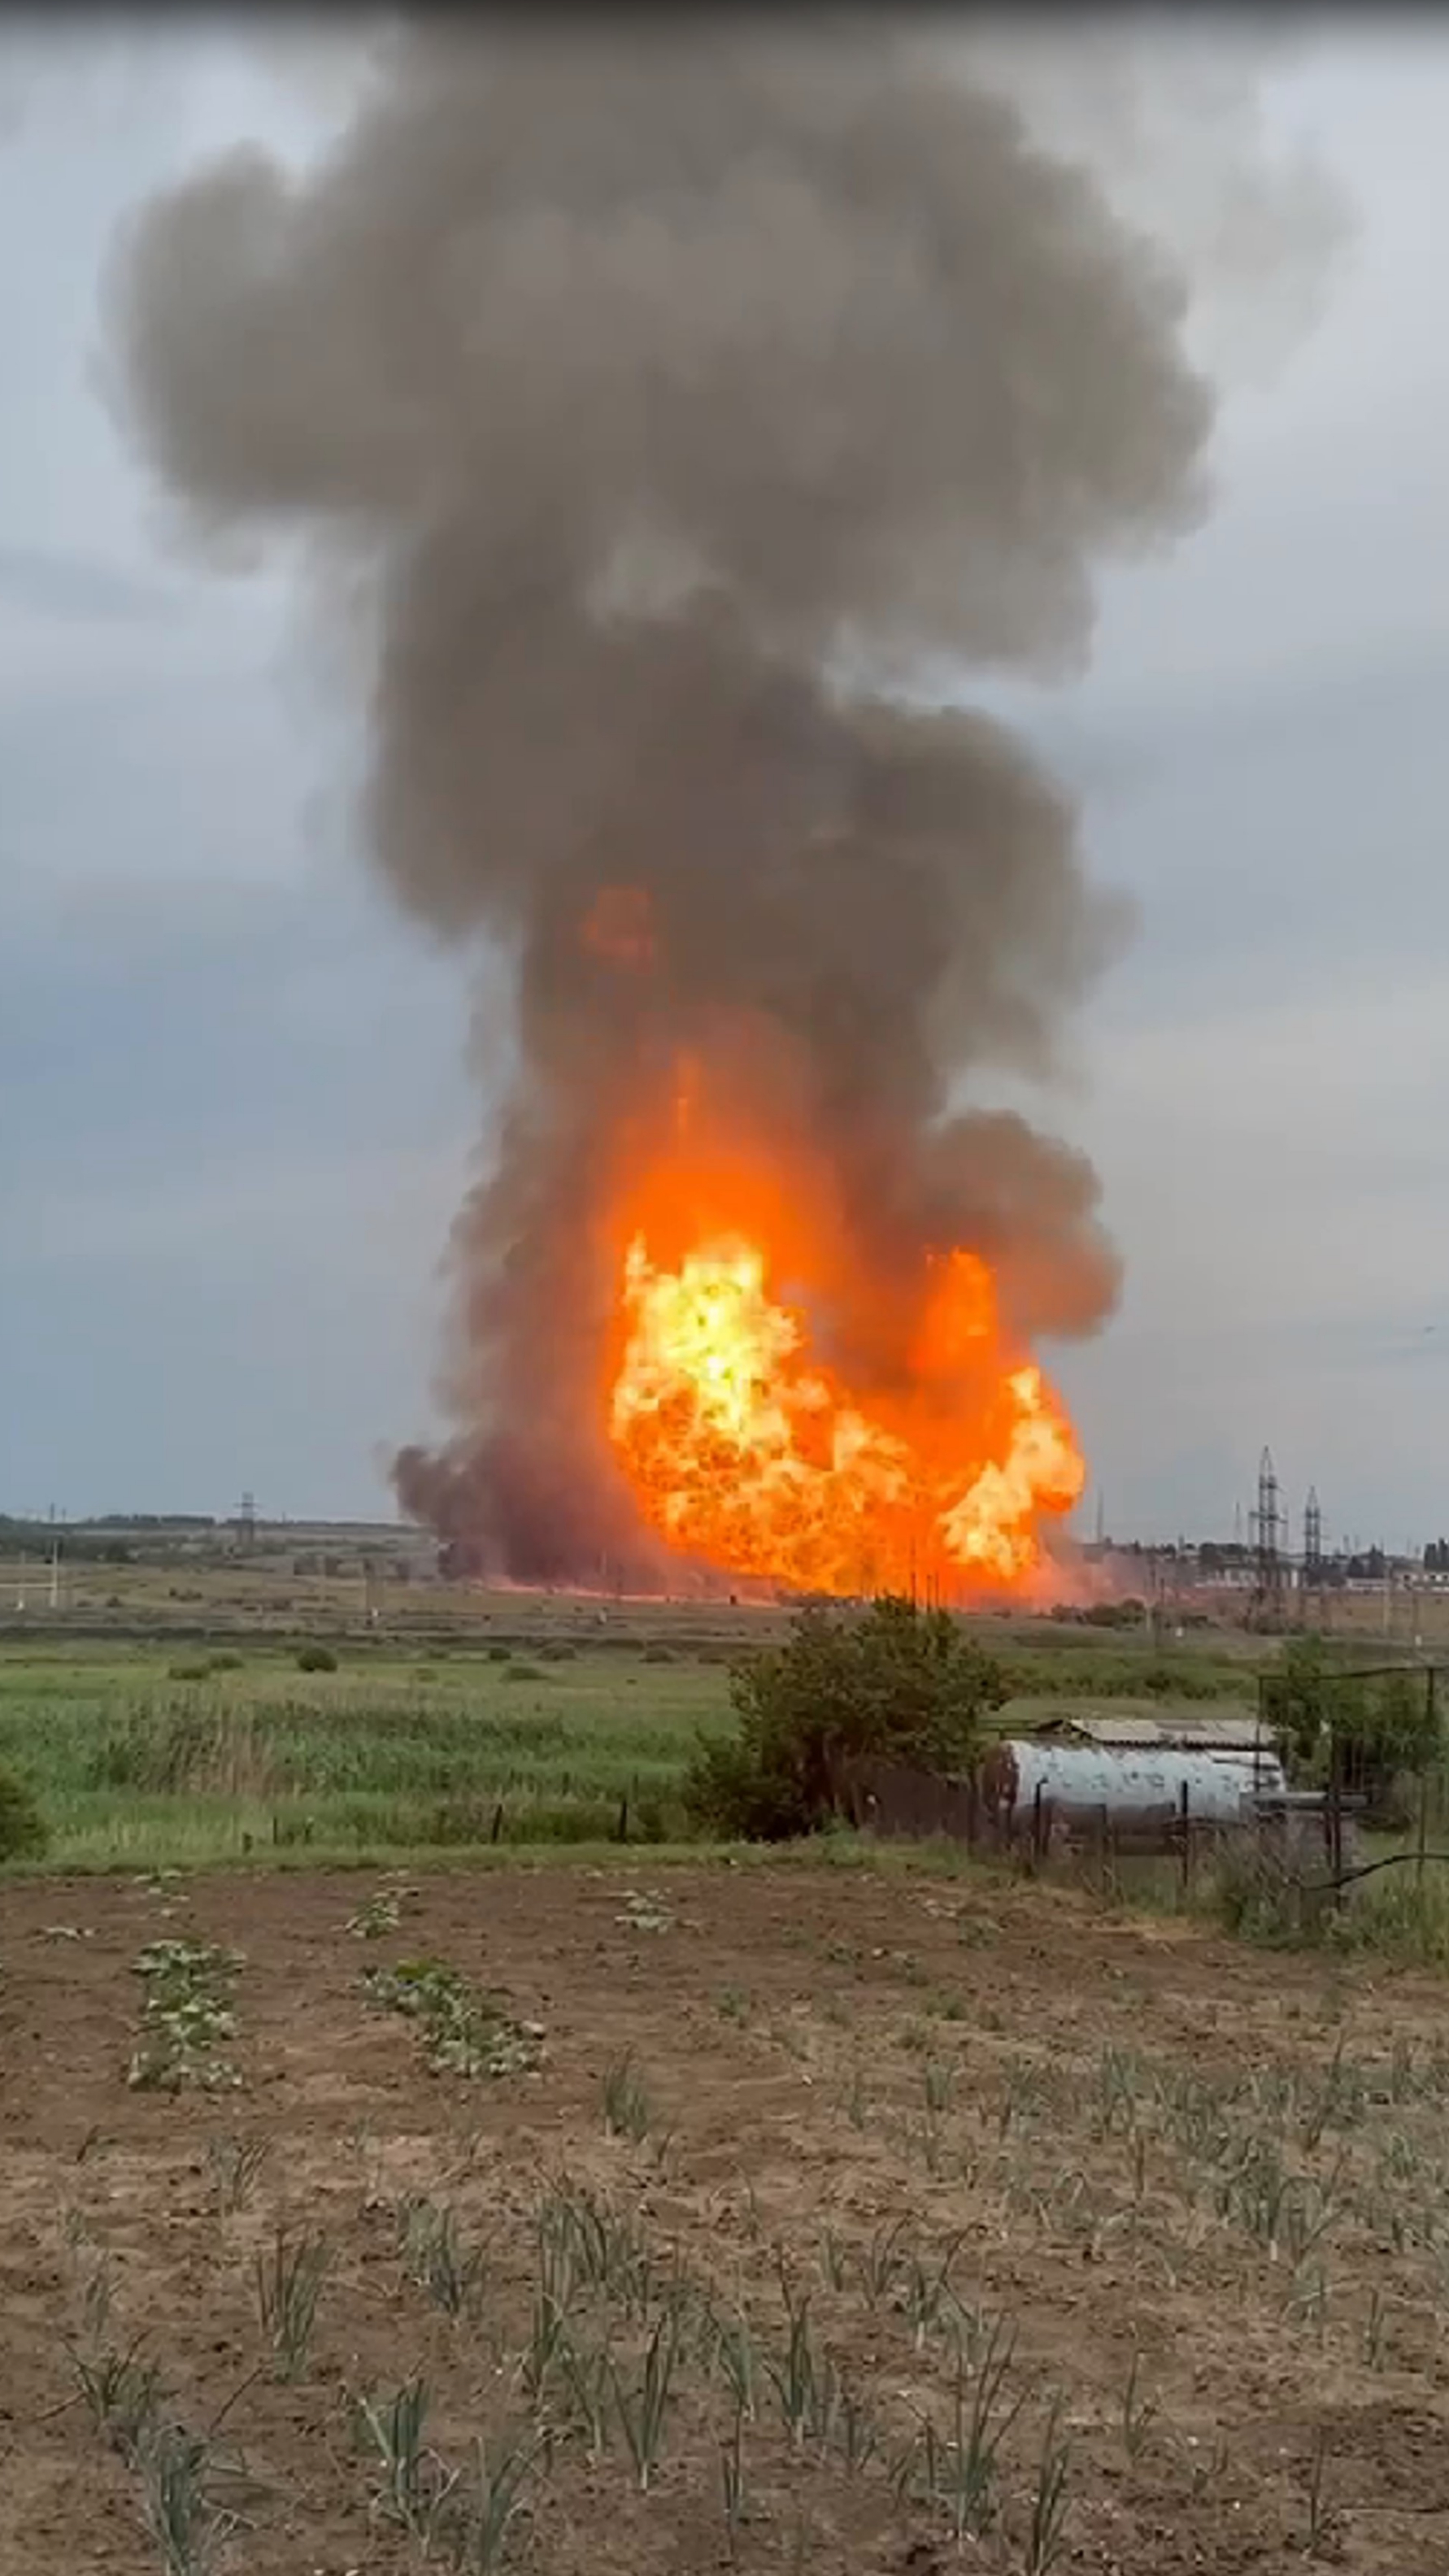 ЧП в Саратовской области. Взрыв газа и пожар в Татищевском районе около села Сторожевка